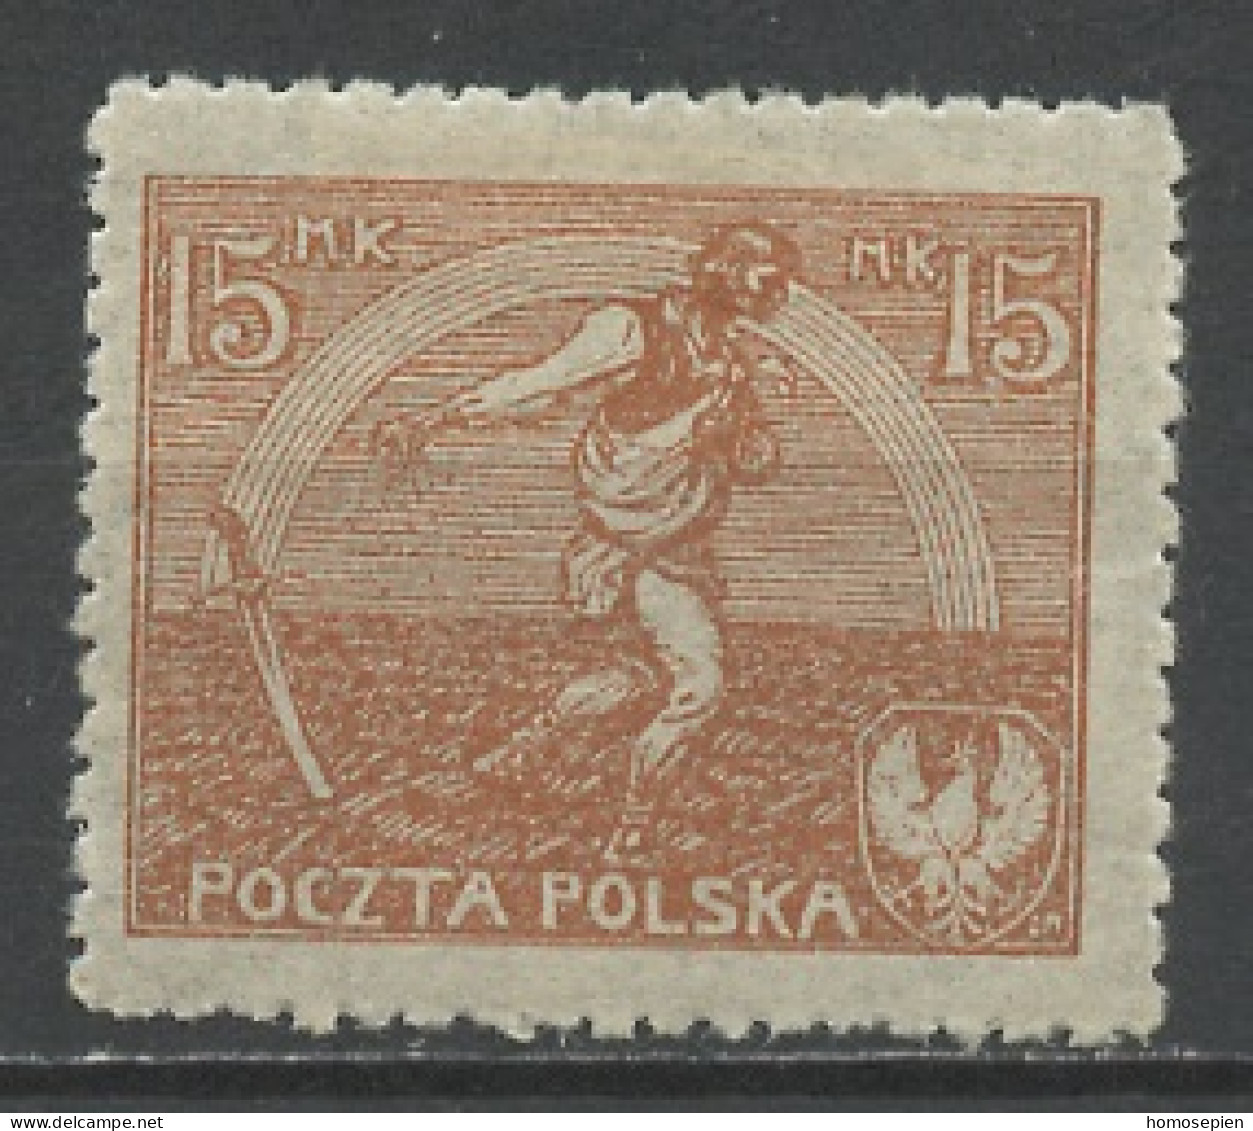 Pologne - Poland - Polen 1921-22 Y&T N°225 - Michel N°159 * - 15m Semeur - Neufs